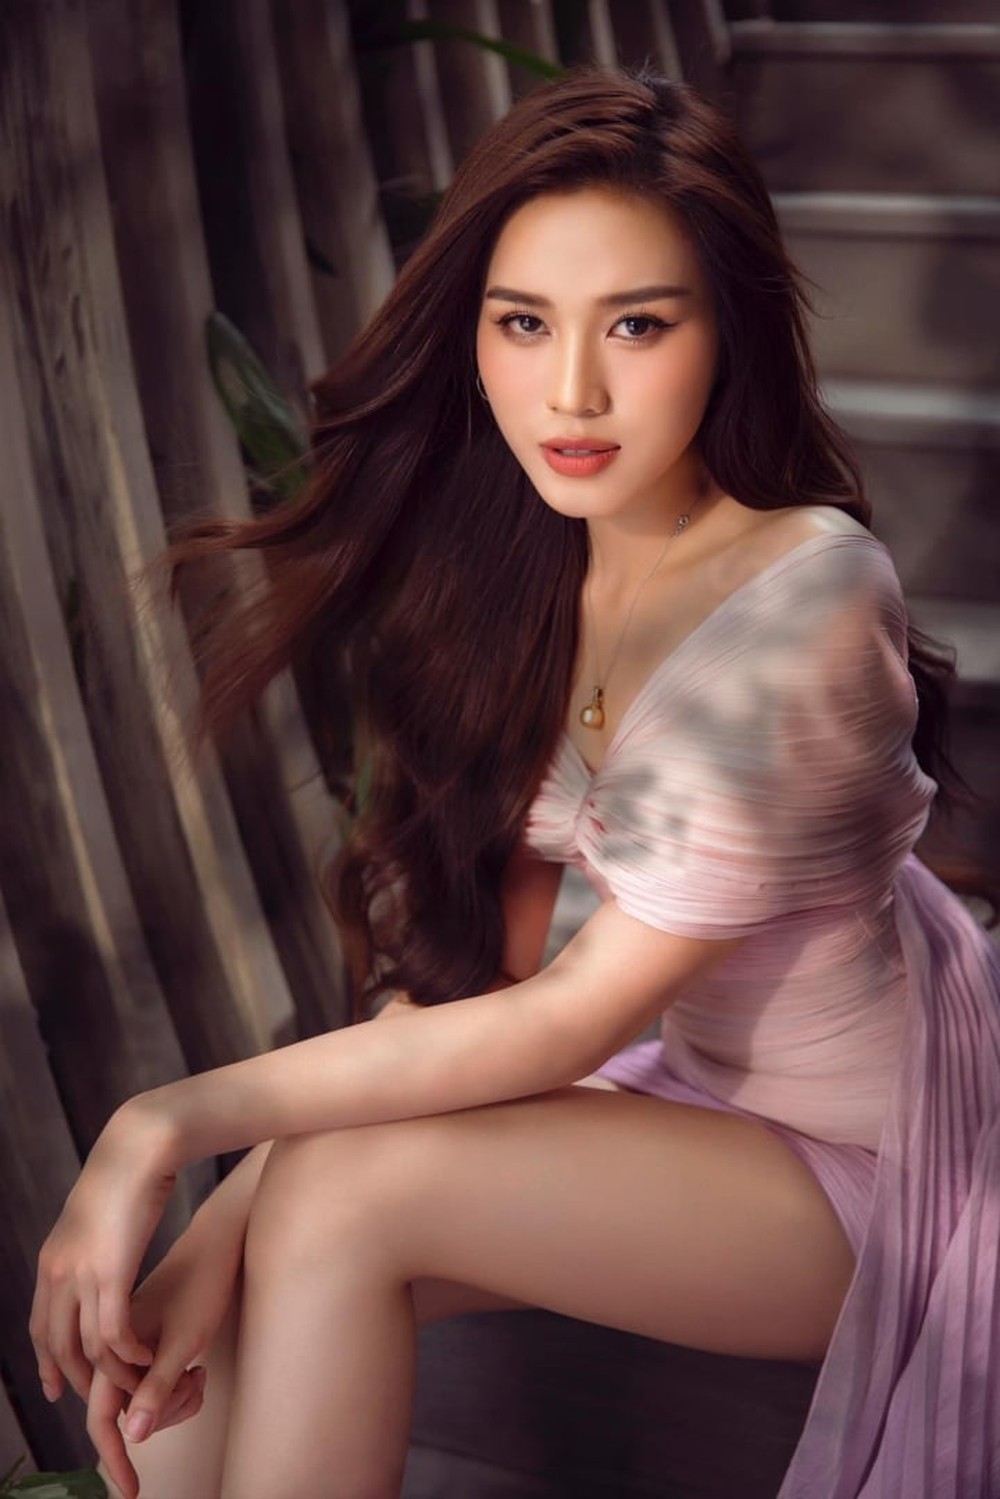 Hoa hậu Đỗ Thị Hà thoát mác gái quê sau khi hết nhiệm kỳ - Ảnh 8.